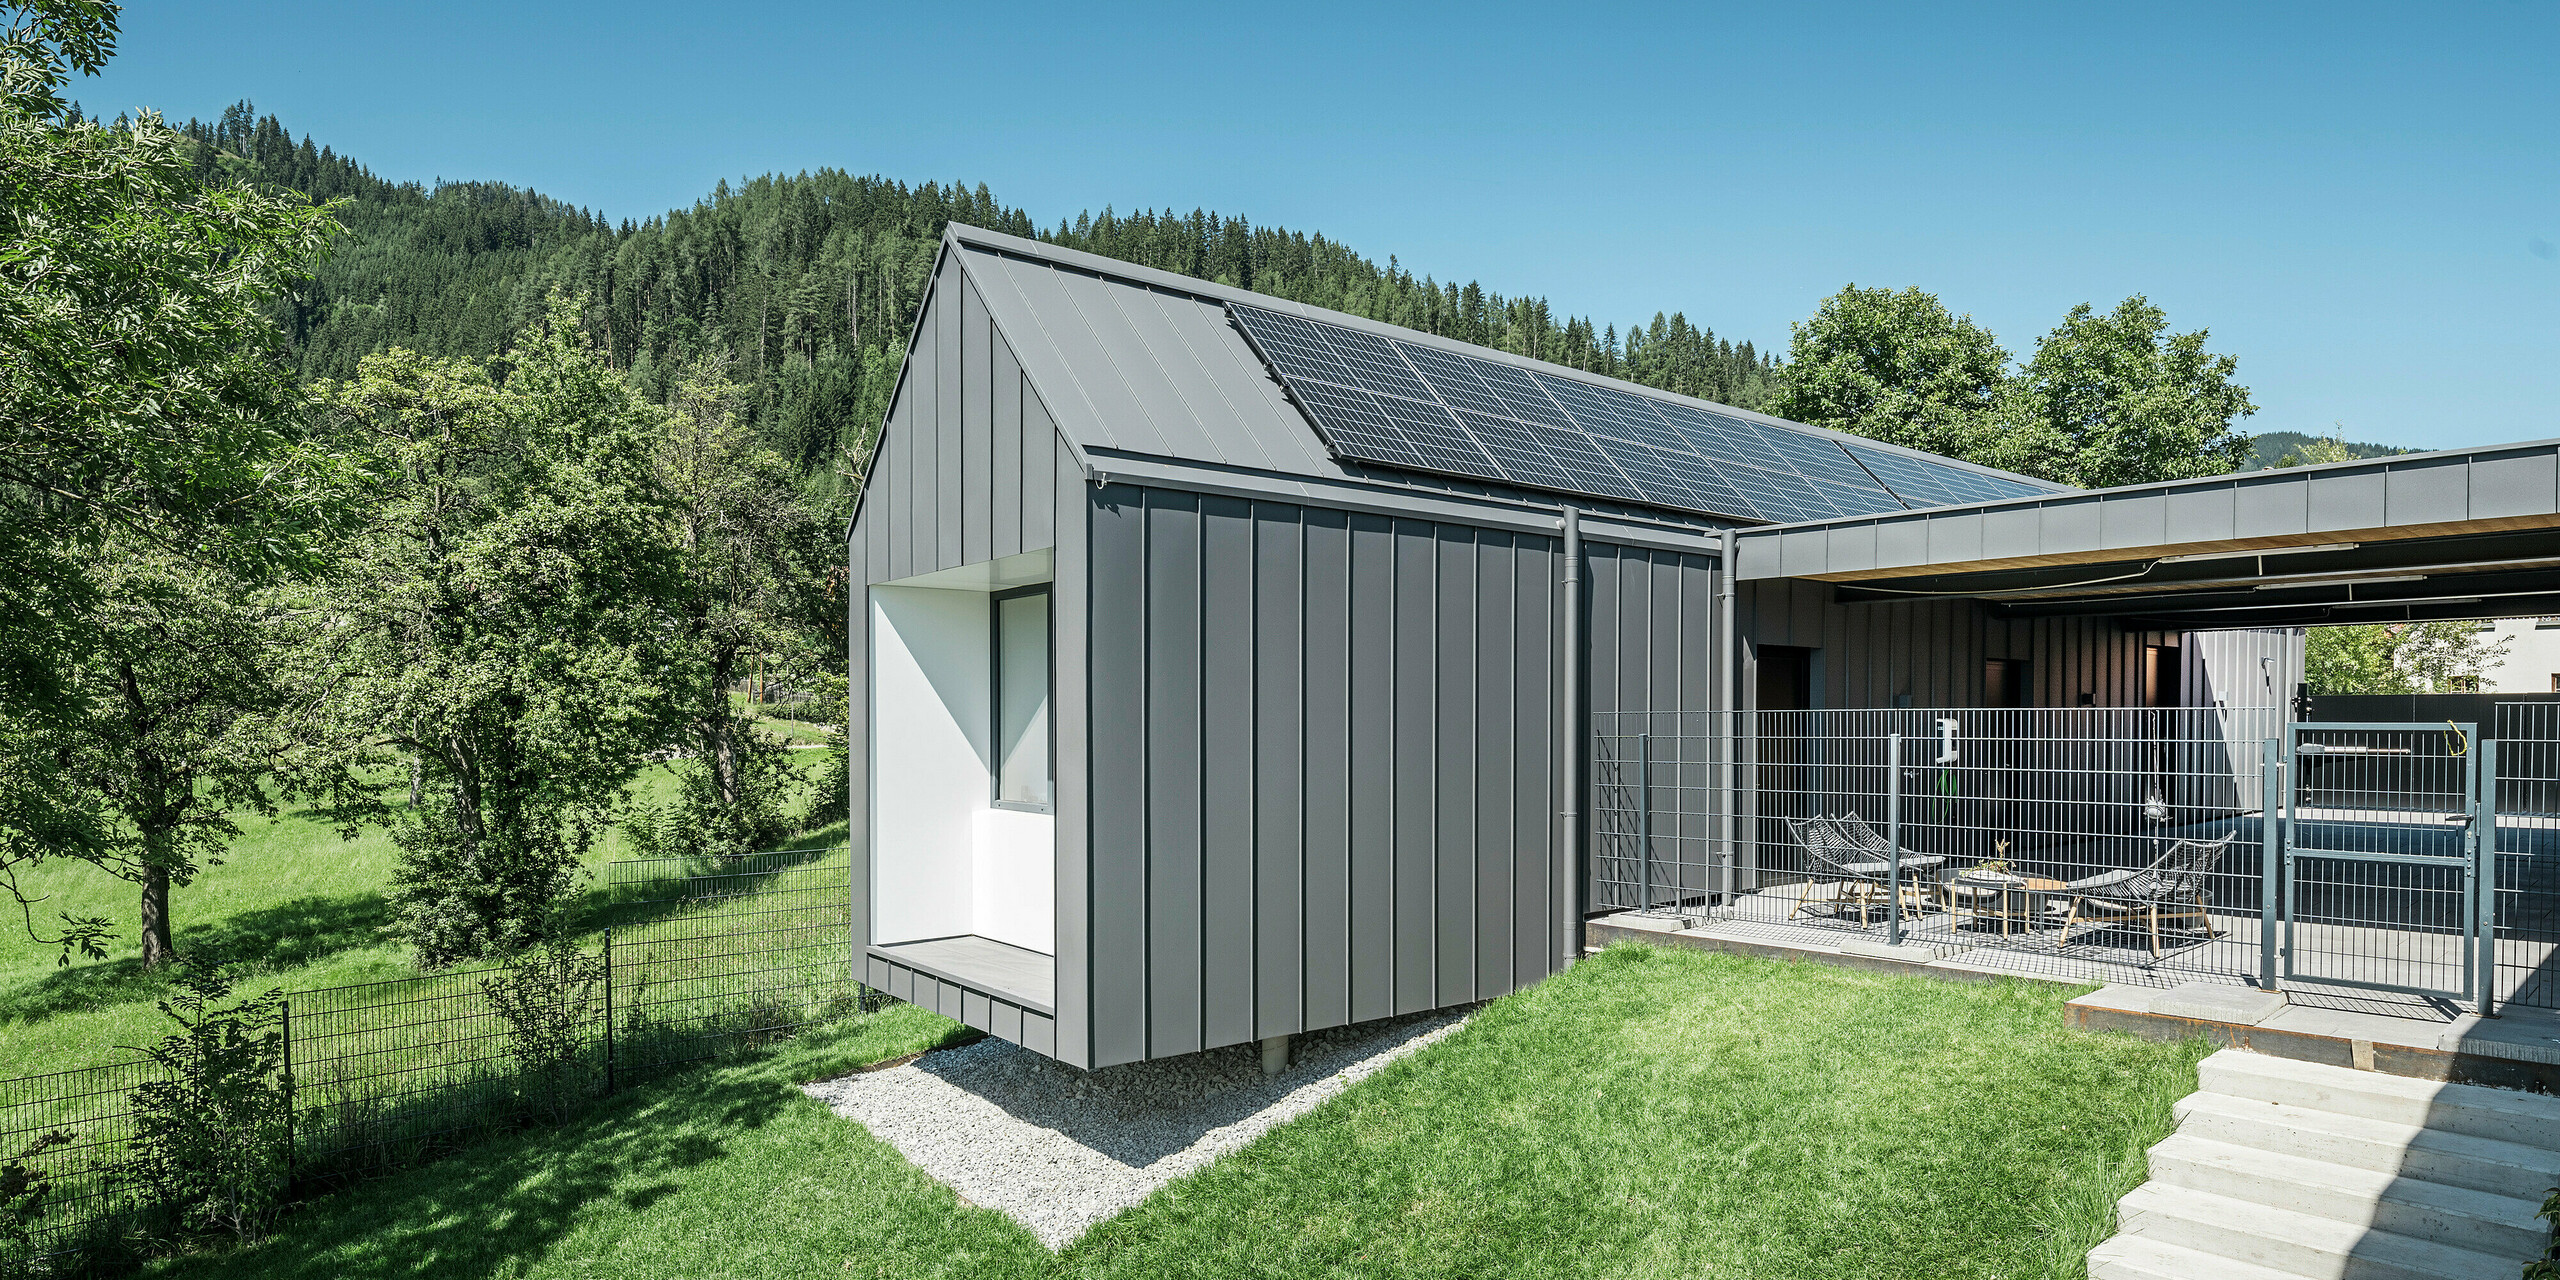 Harmonický zadní pohled na moderní rodinný dům v rakouském Pogier se střešním a fasádním systémem PREFALZ v tmavě šedé barvě P.10, integrovaným do idylické lesní krajiny. Kombinace tmavě šedého hliníkového opláštění a přírodního prostředí podtrhuje ekologický koncept domu doplněný o efektivní fotovoltaický systém na střeše. Oplocený venkovní areál s relaxačním posezením zve k lenošení a vychutnávání klidu a svěžesti okolního lesa.